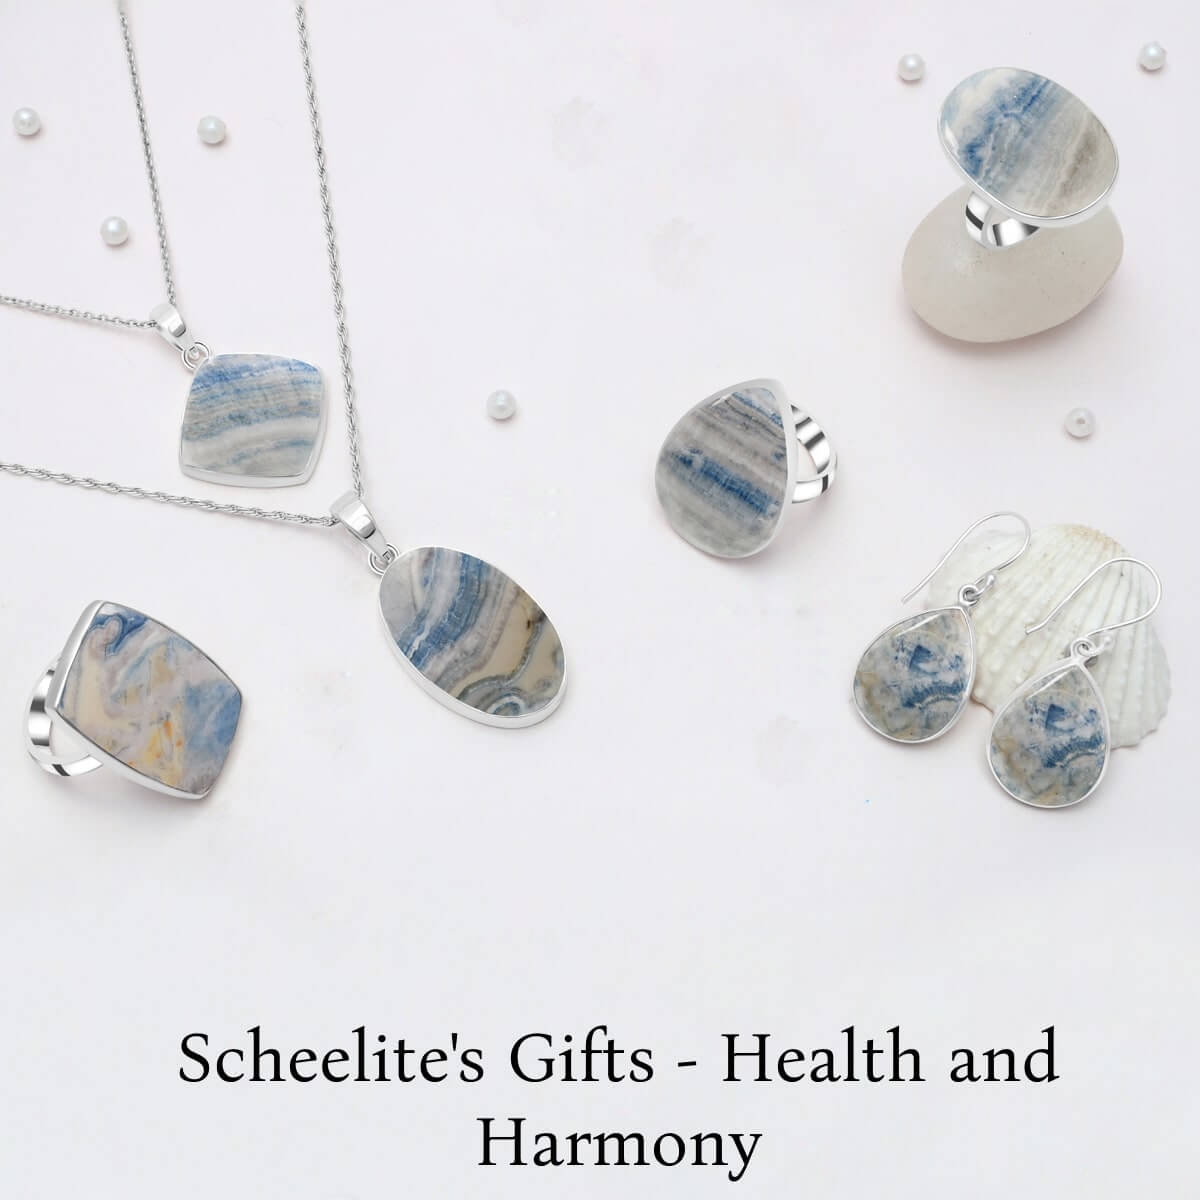 Scheelite: Healing Properties and Benefits